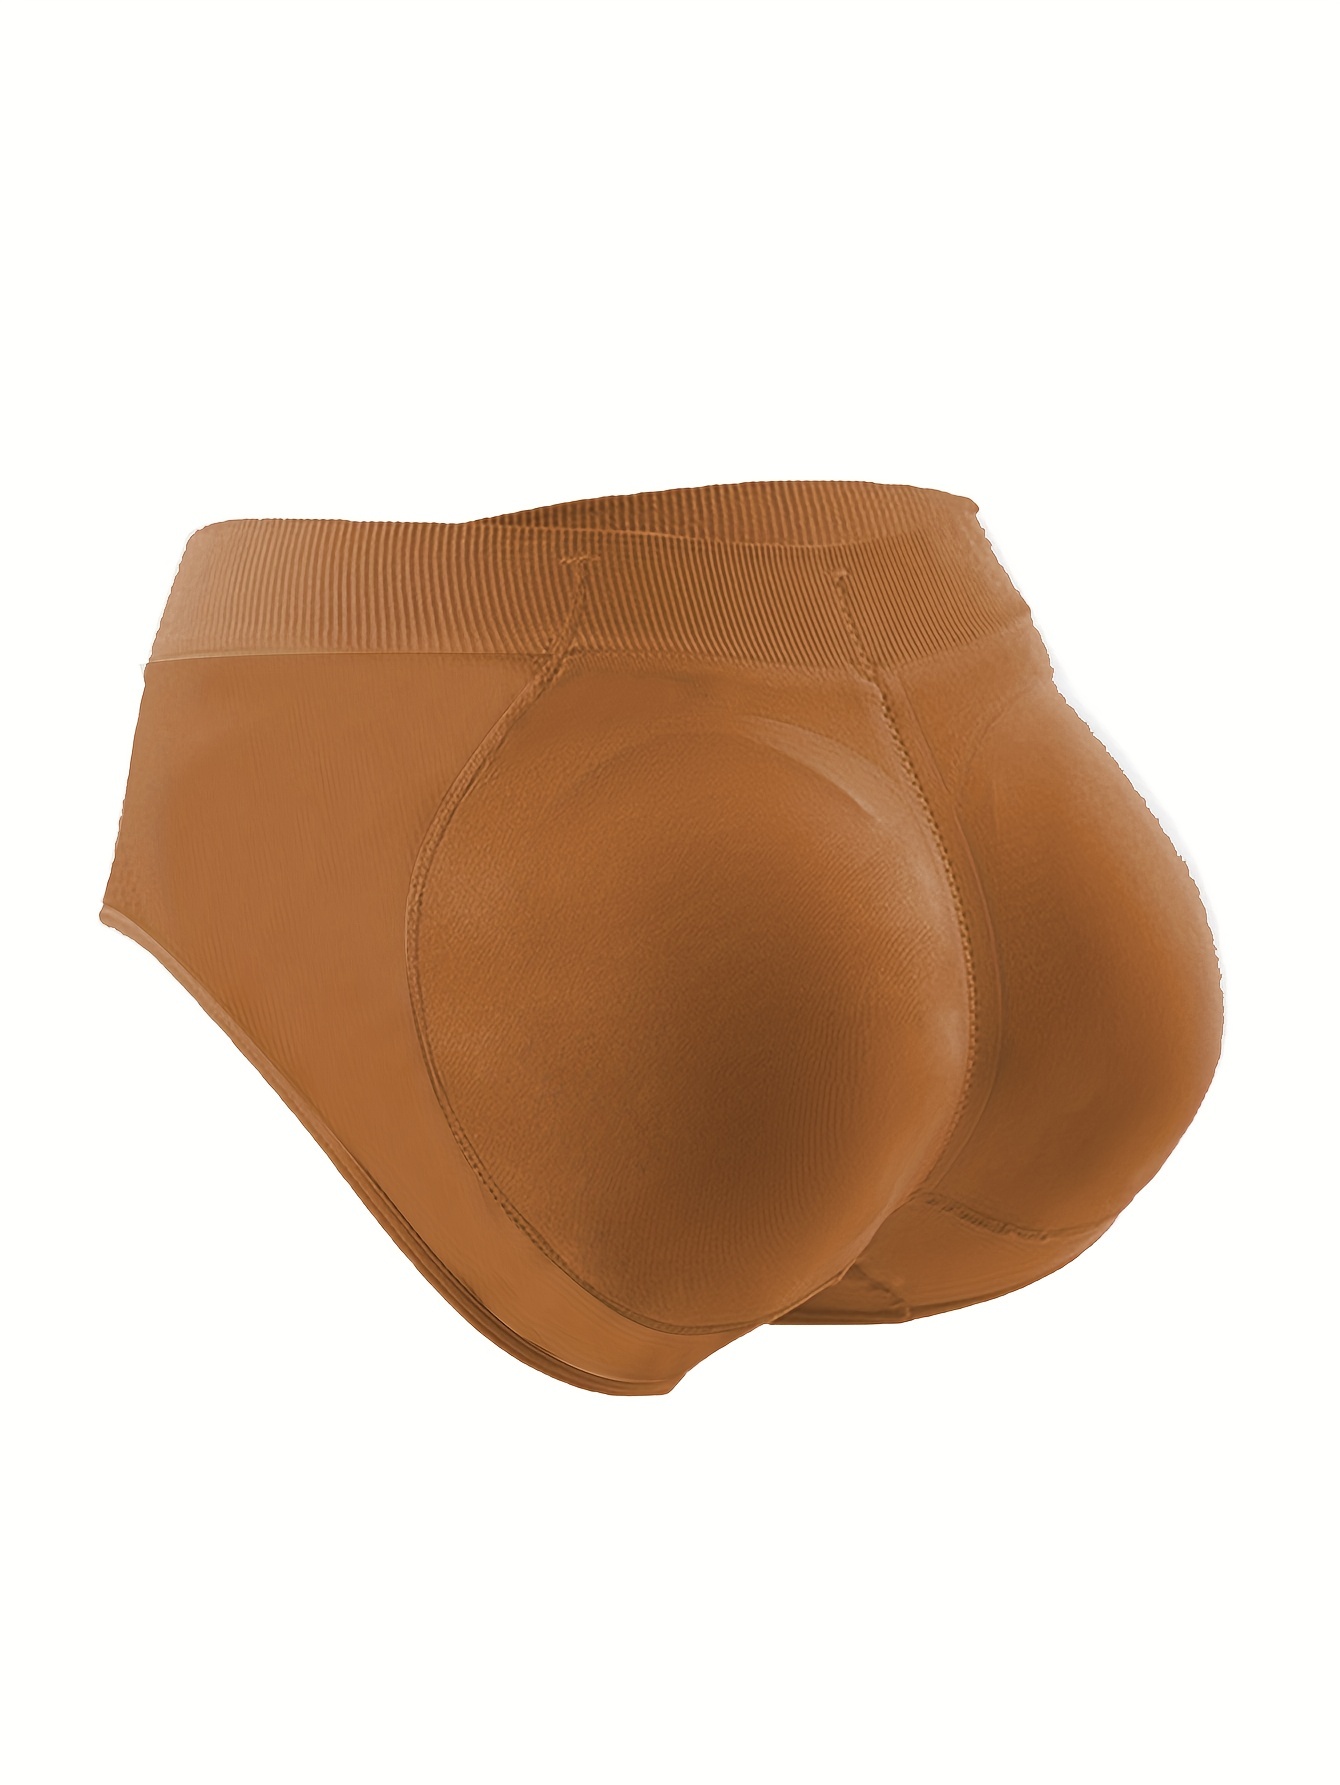 Women's Shaper Pants Seamless Butt Lifter Padded Underwear Panty